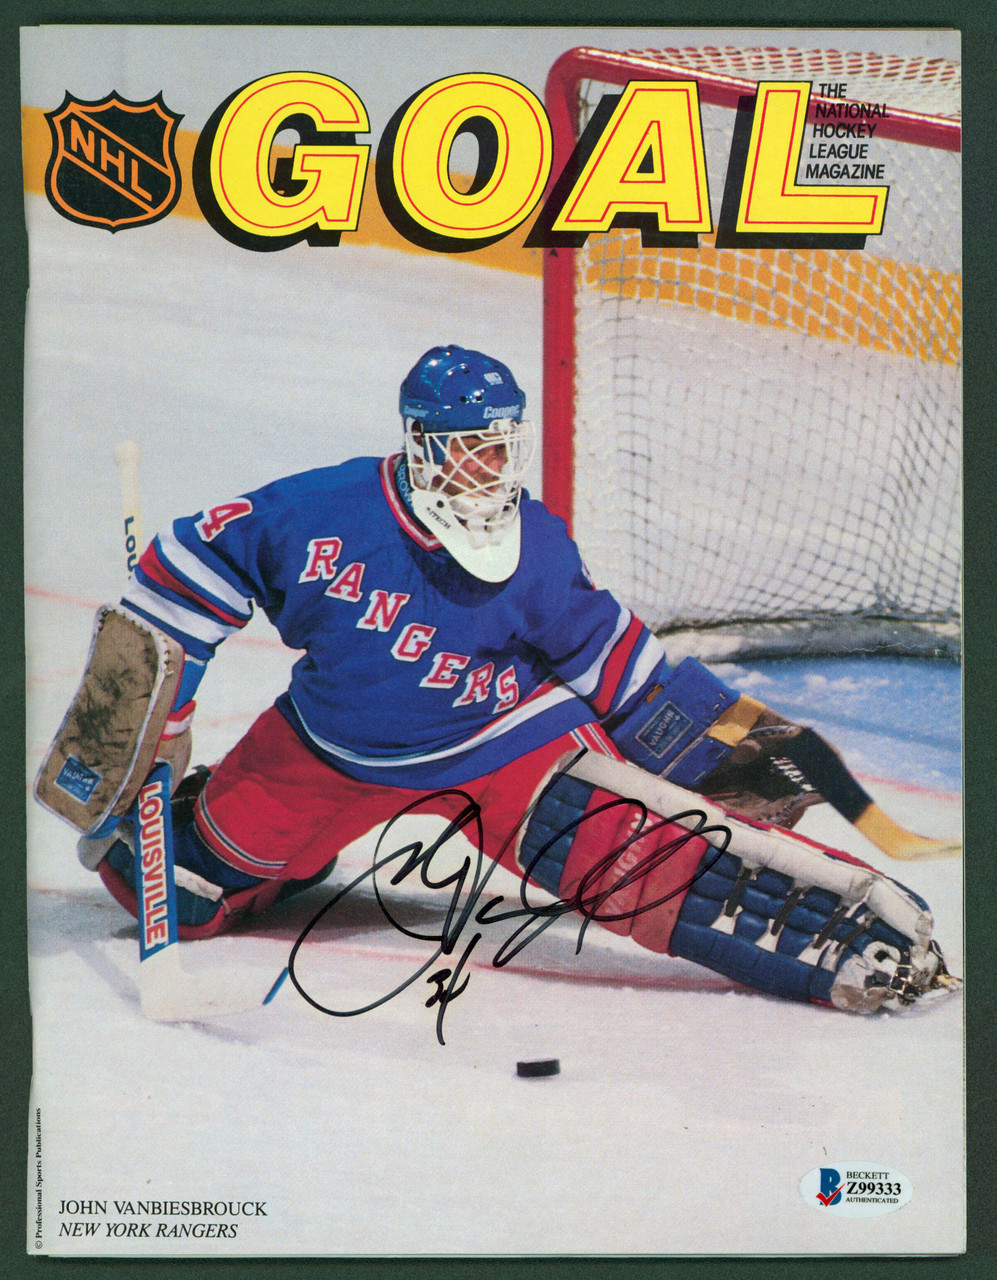 JOHN VANBIESBROUCK New York Rangers SIGNED Autograph Goalie Mask